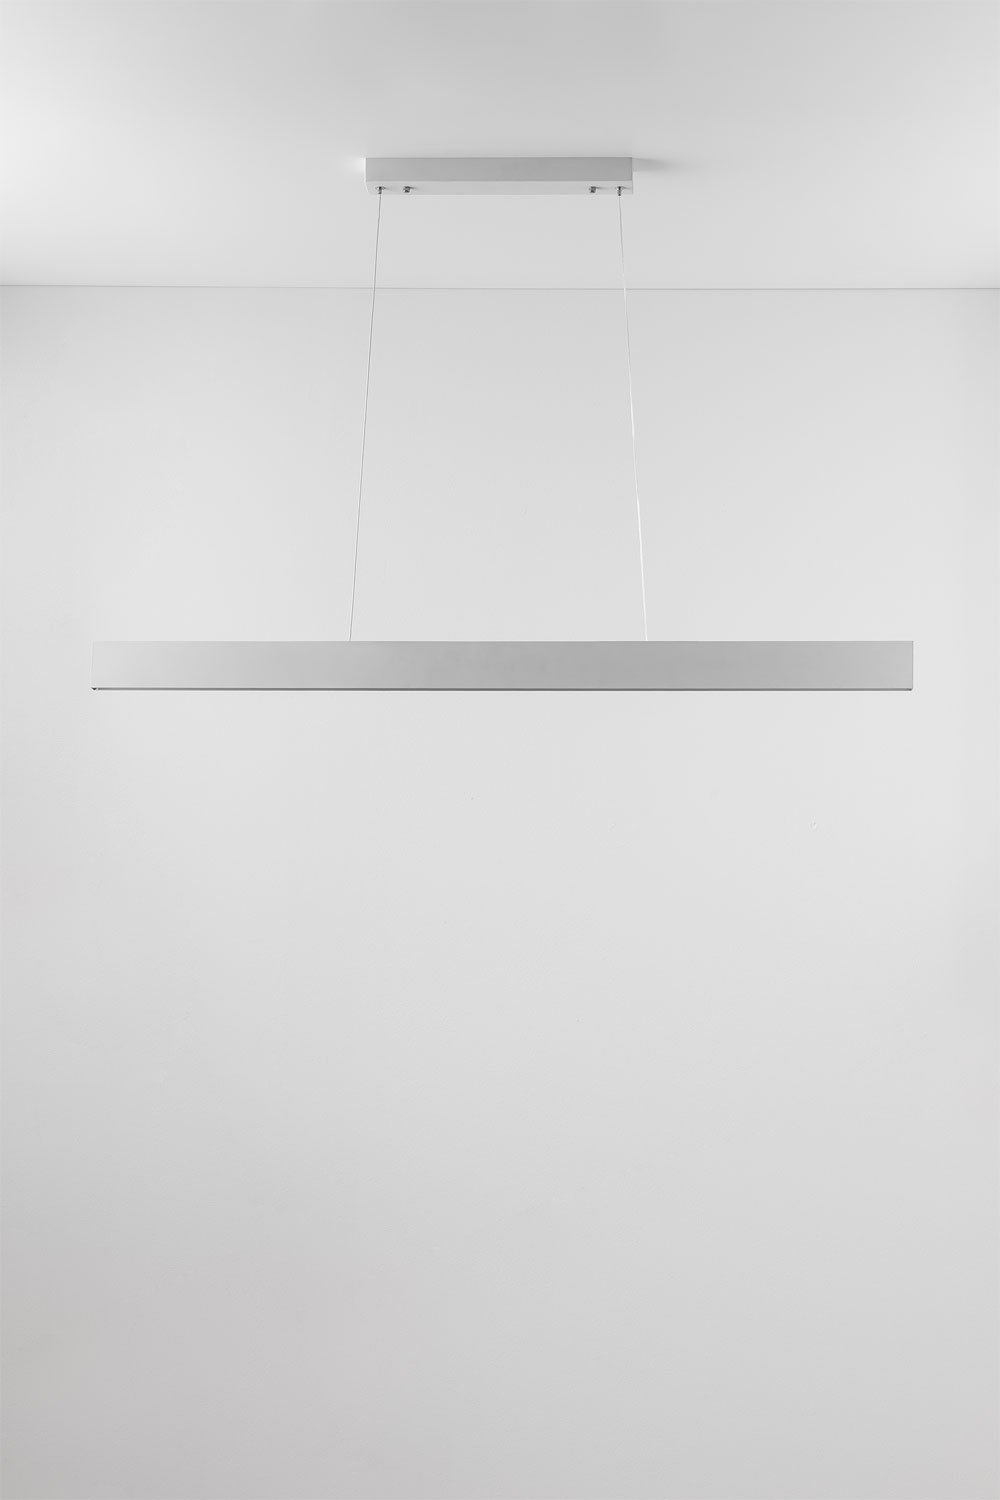 Astley aluminium LED lineaire plafondlamp, galerij beeld 1